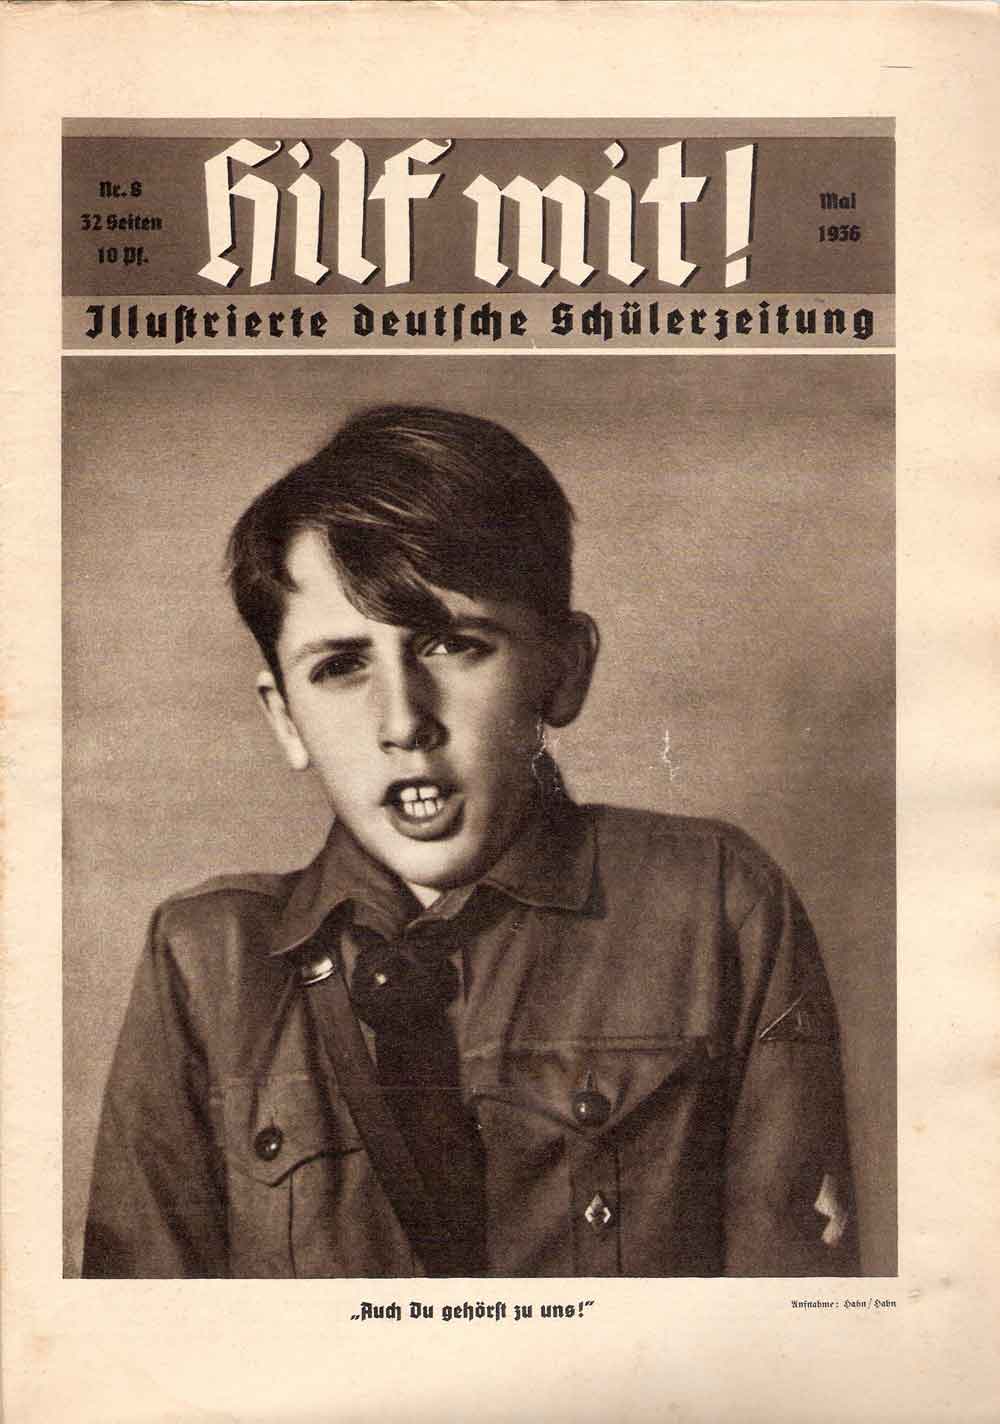 Hitlerjunge, Hilf mit! - Illustrierte deutsche Schülerzeitung